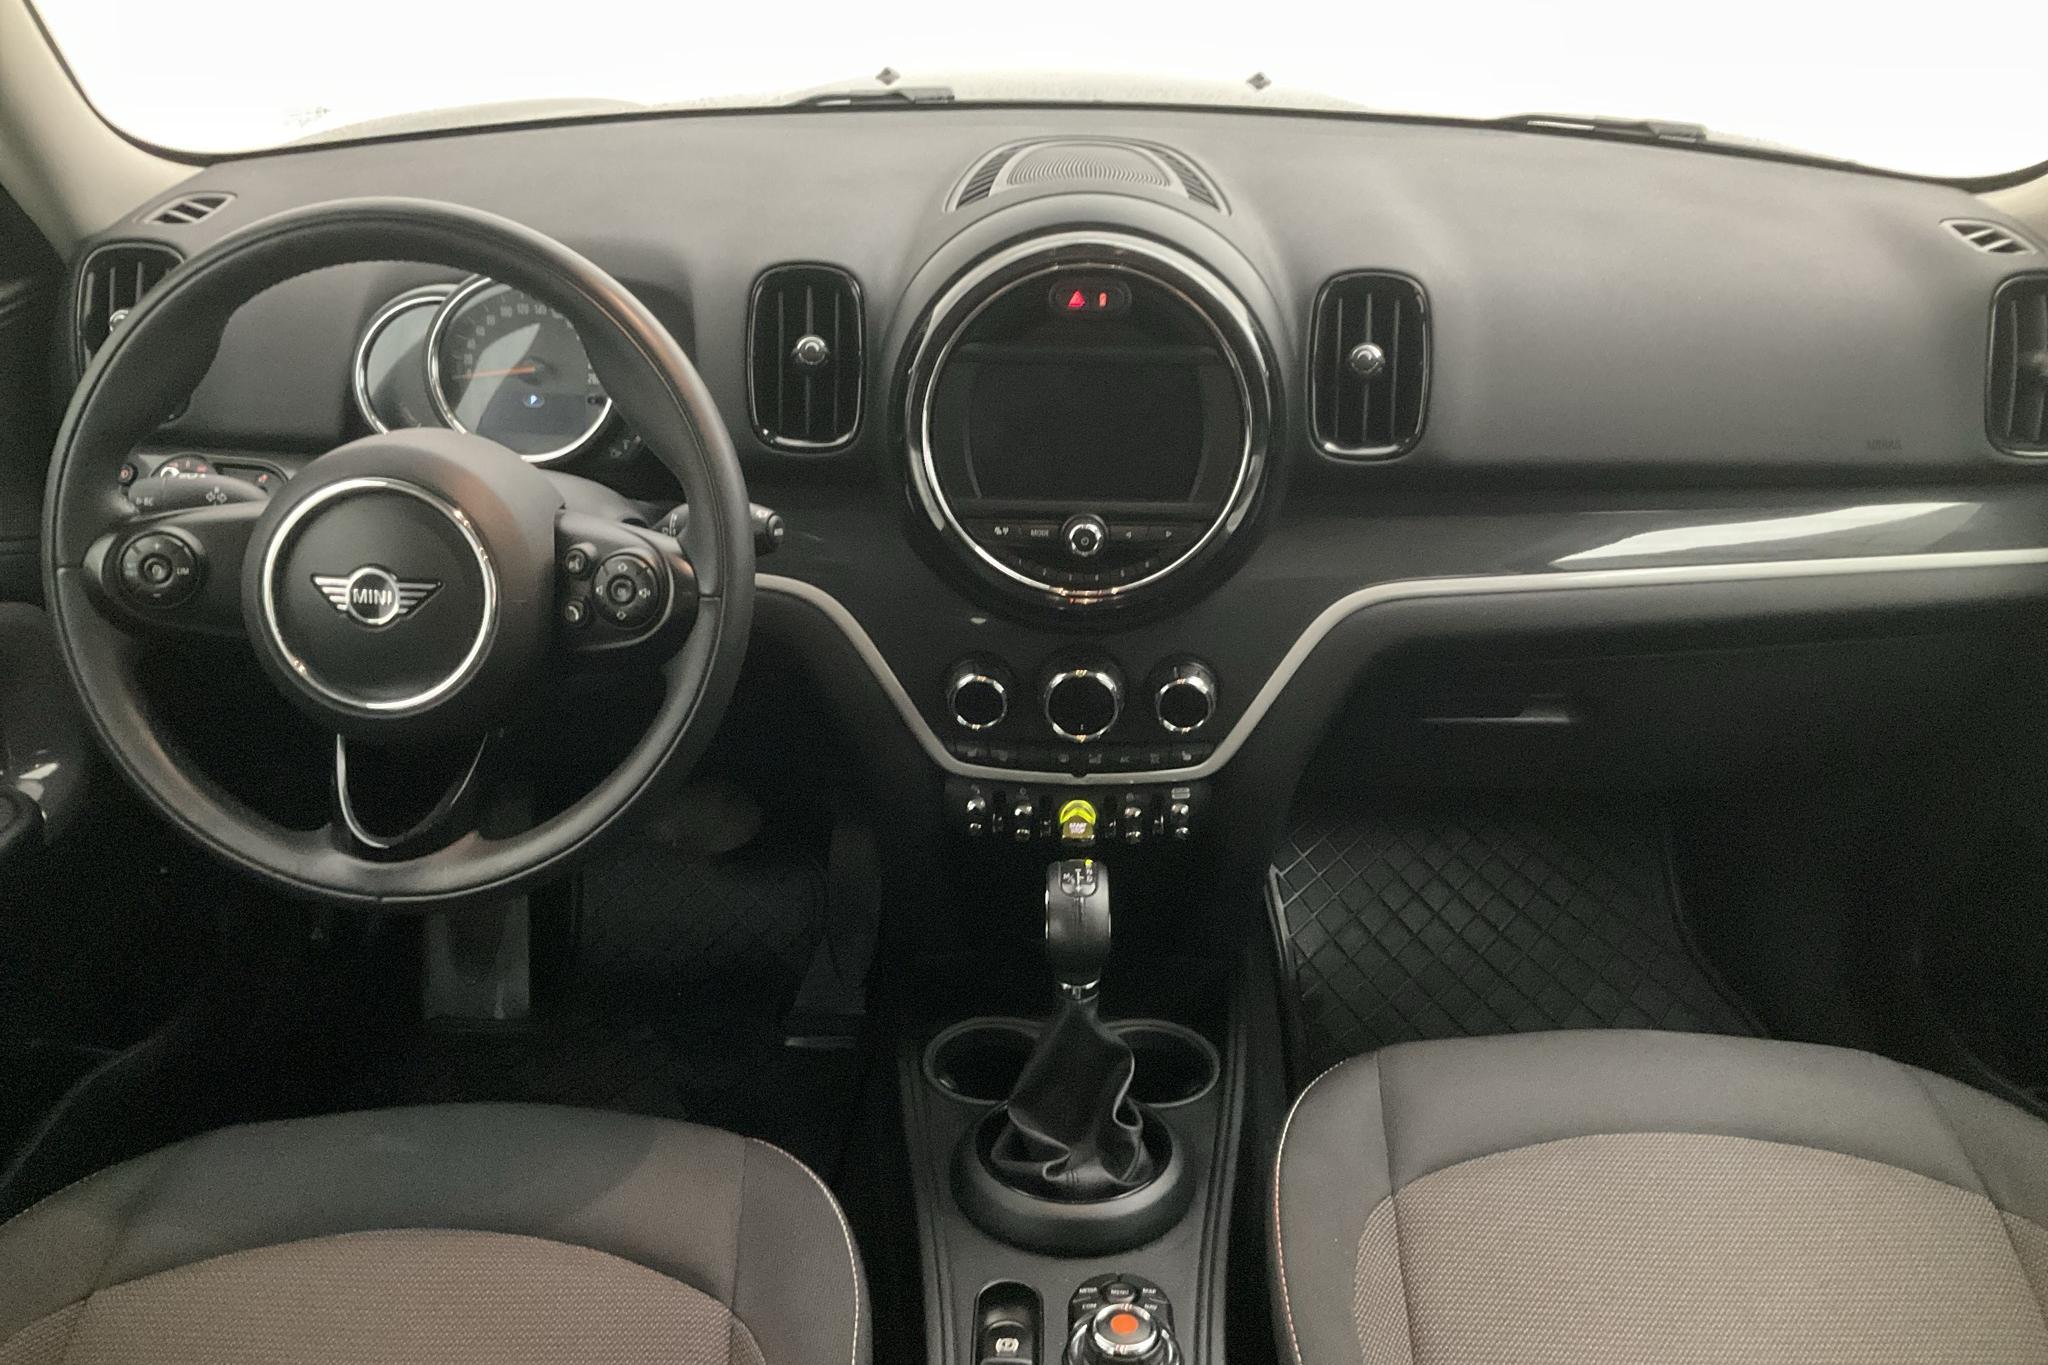 MINI Cooper S E ALL4 Countryman, F60 (224hk) - 48 160 km - Automatic - black - 2019